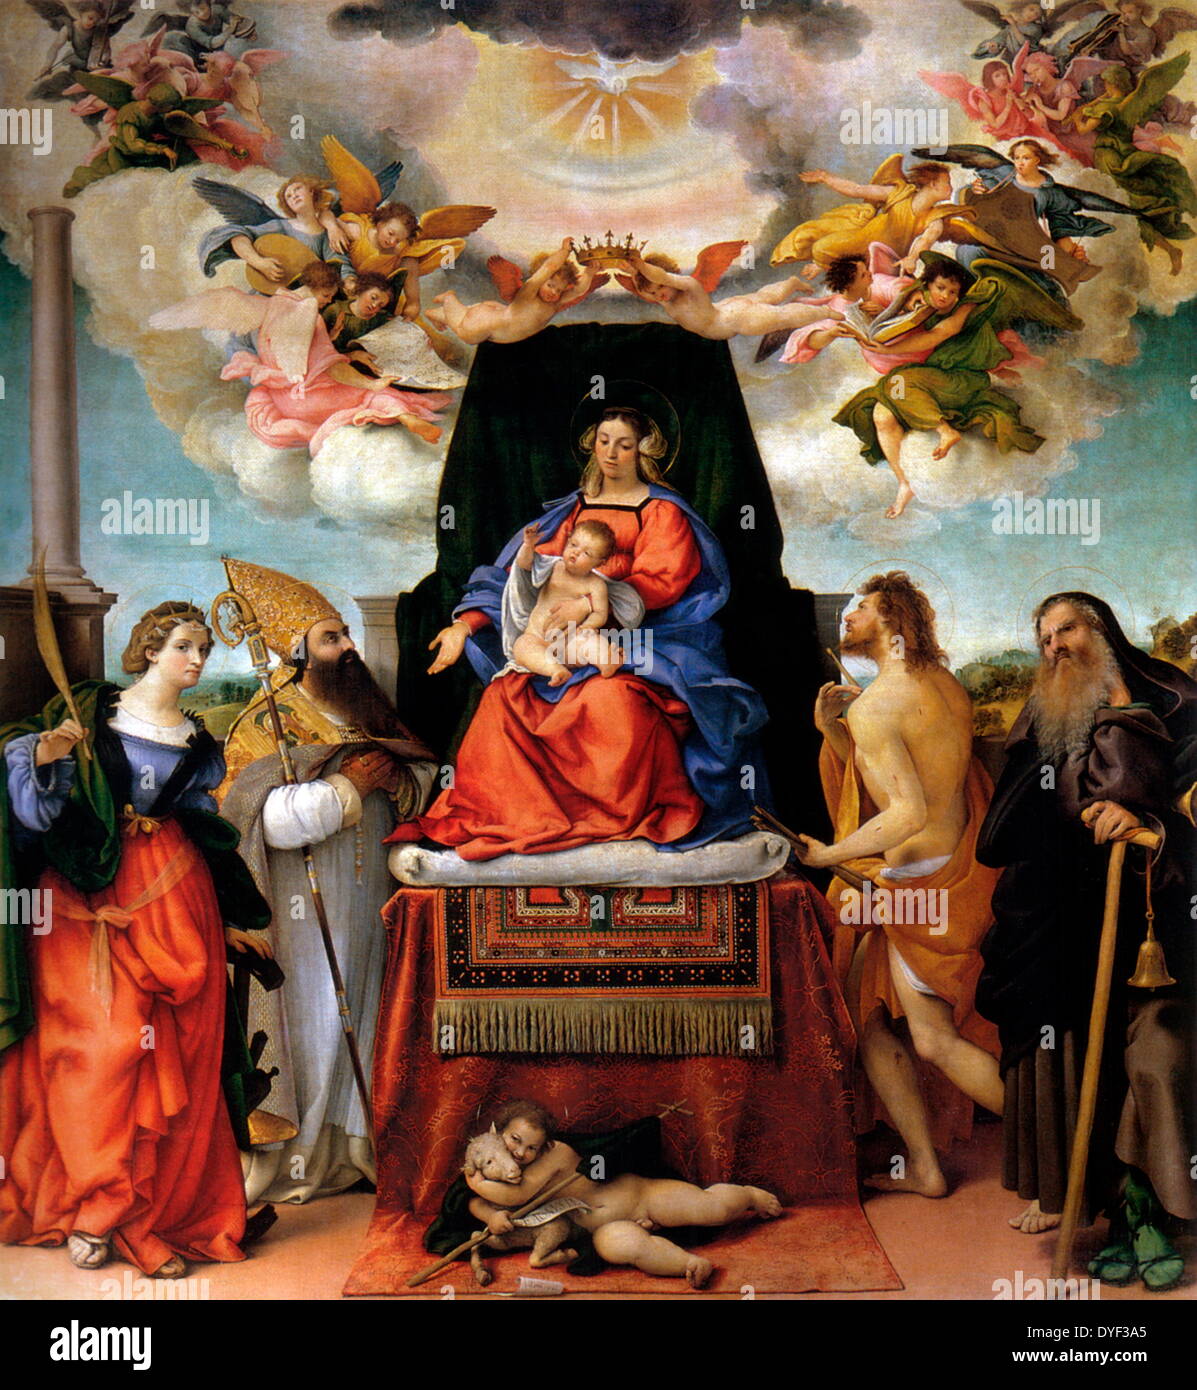 Madonna mit Kind auf dem Thron mit Heiligen 1521. Das Gemälde zeigt Engel spielen, was aussieht wie eine Posaune, während umliegende Madonna und Kind. Renaissance Stil. Lorenzo Lotto Stockfoto